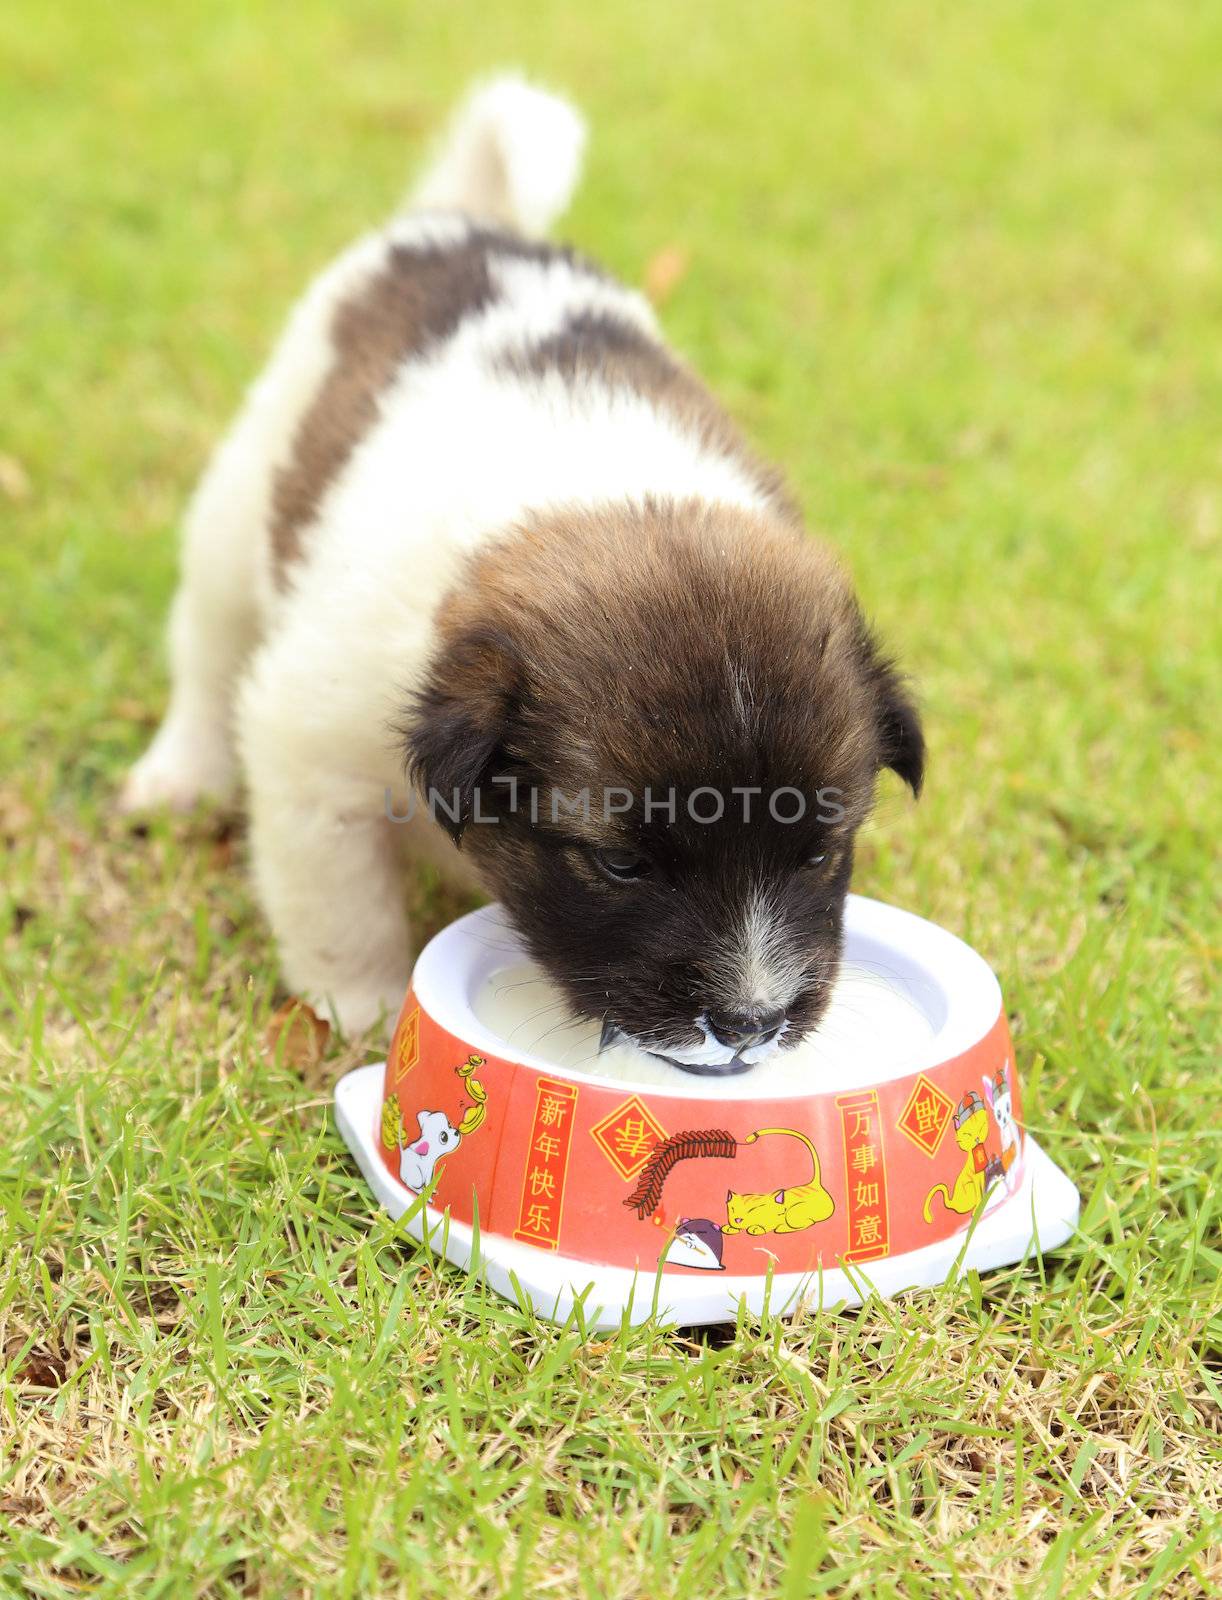 puppy dog on the grass drinking milk